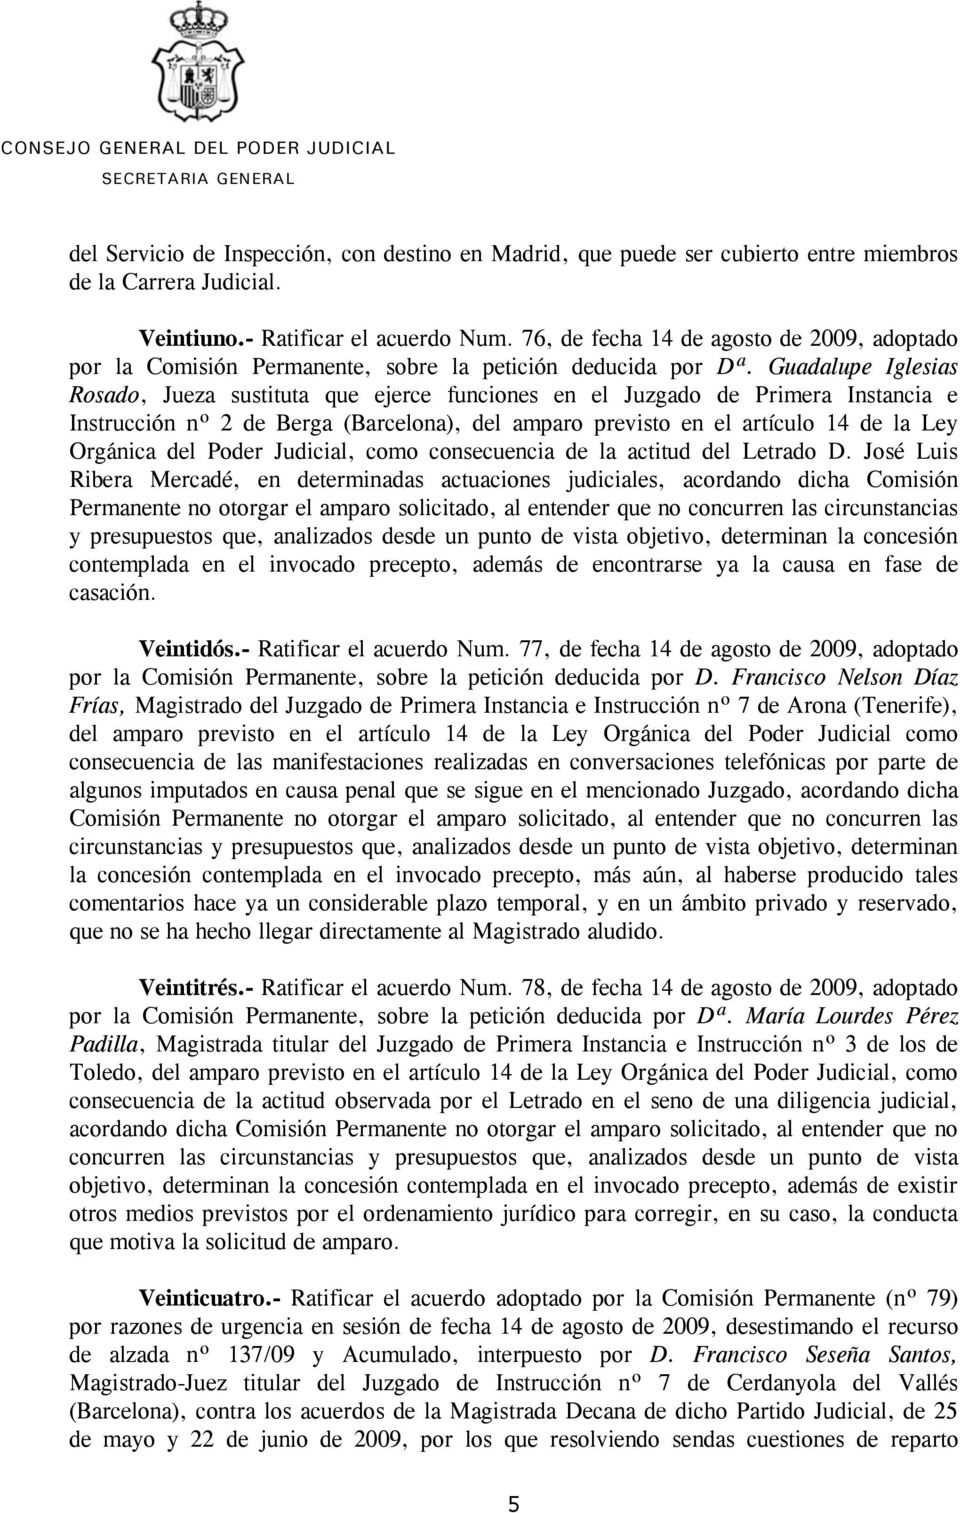 Guadalupe Iglesias Rosado, Jueza sustituta que ejerce funciones en el Juzgado de Primera Instancia e Instrucción nº 2 de Berga (Barcelona), del amparo previsto en el artículo 14 de la Ley Orgánica